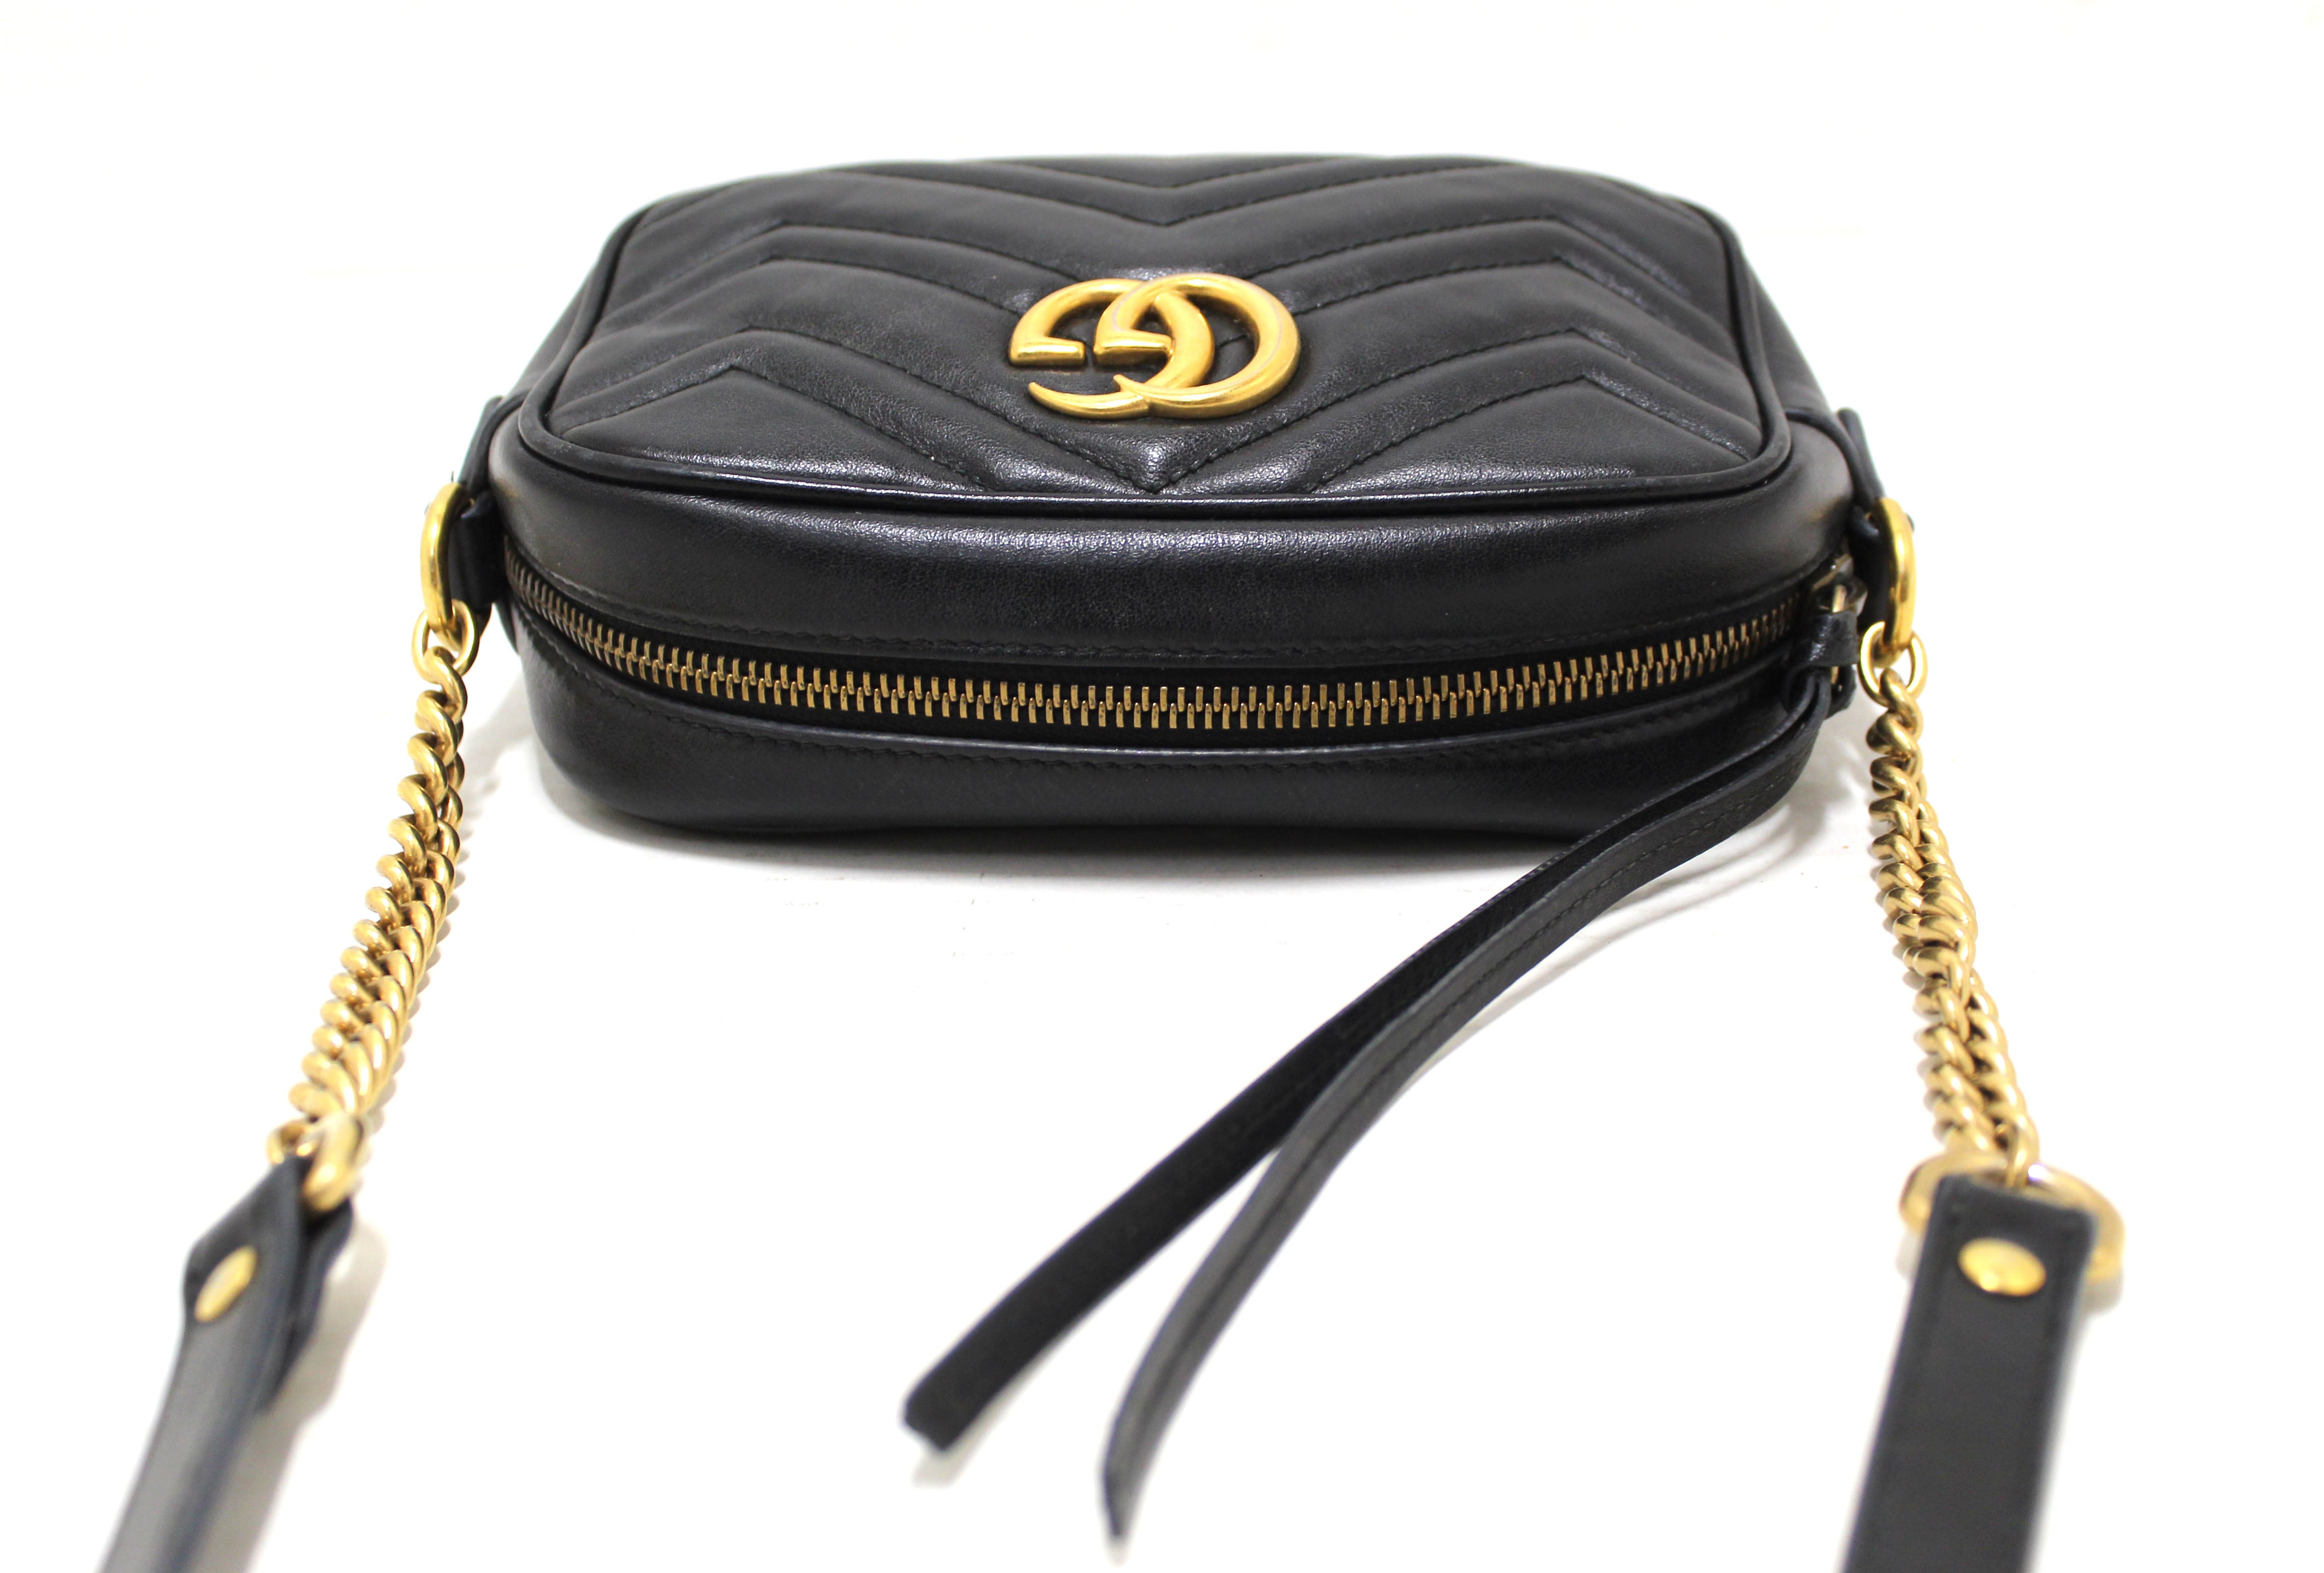 Gucci Black Small Marmont Camera Bag